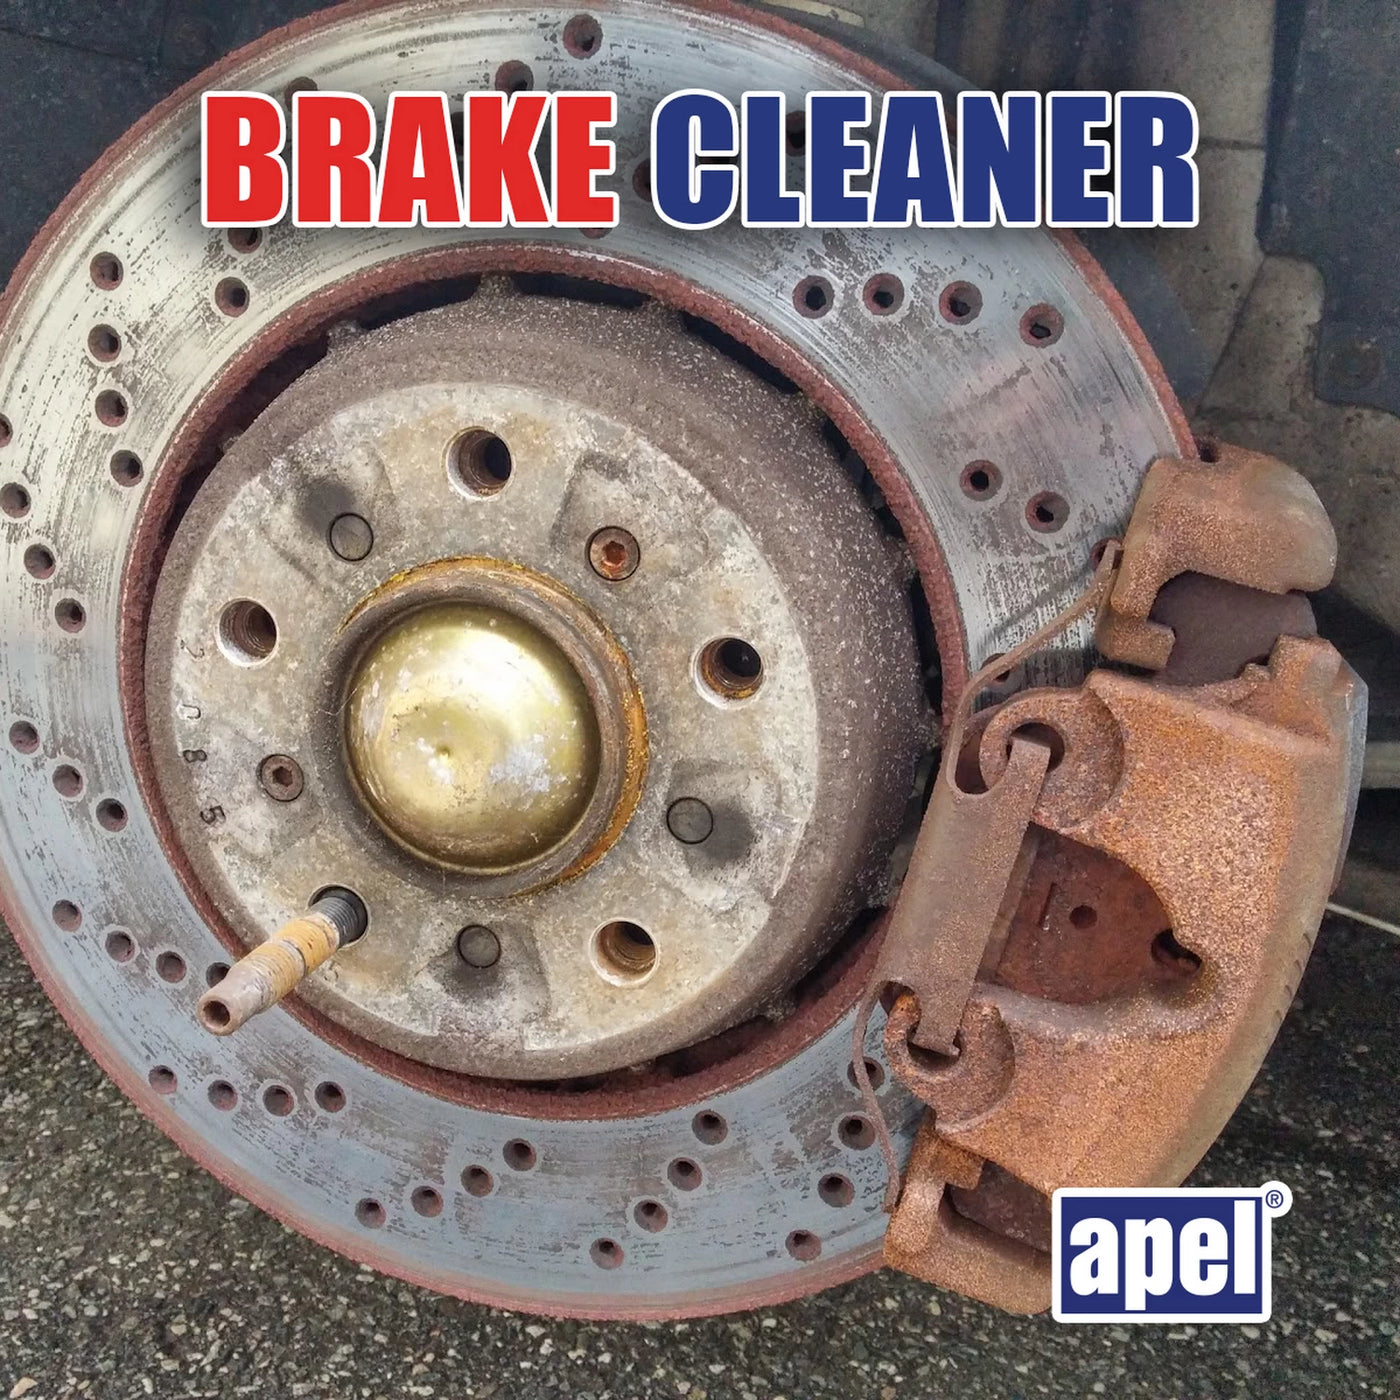 BK20 Brake cleaner